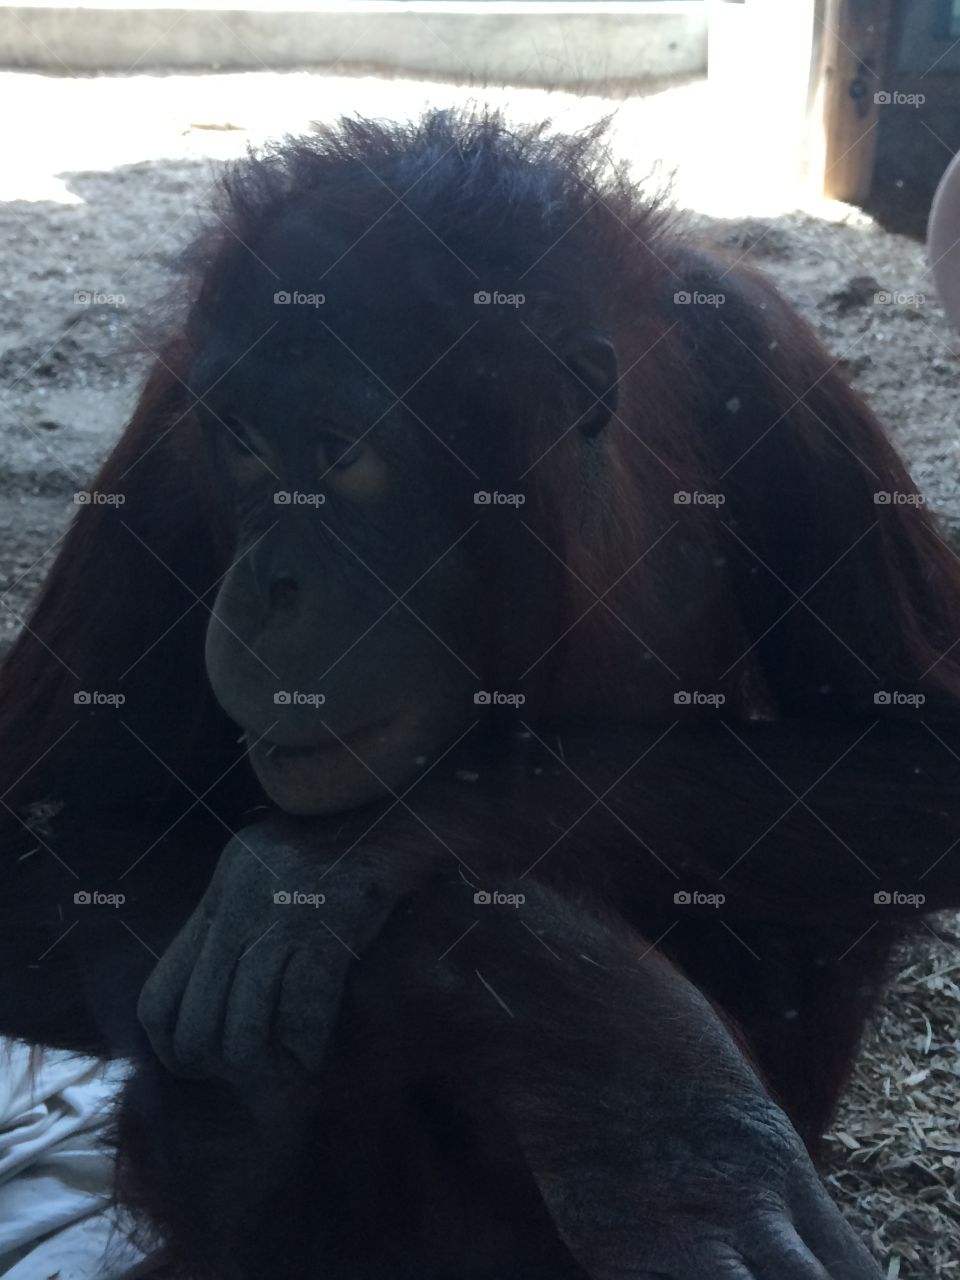 Orangutan at the Phoenix Zoo.